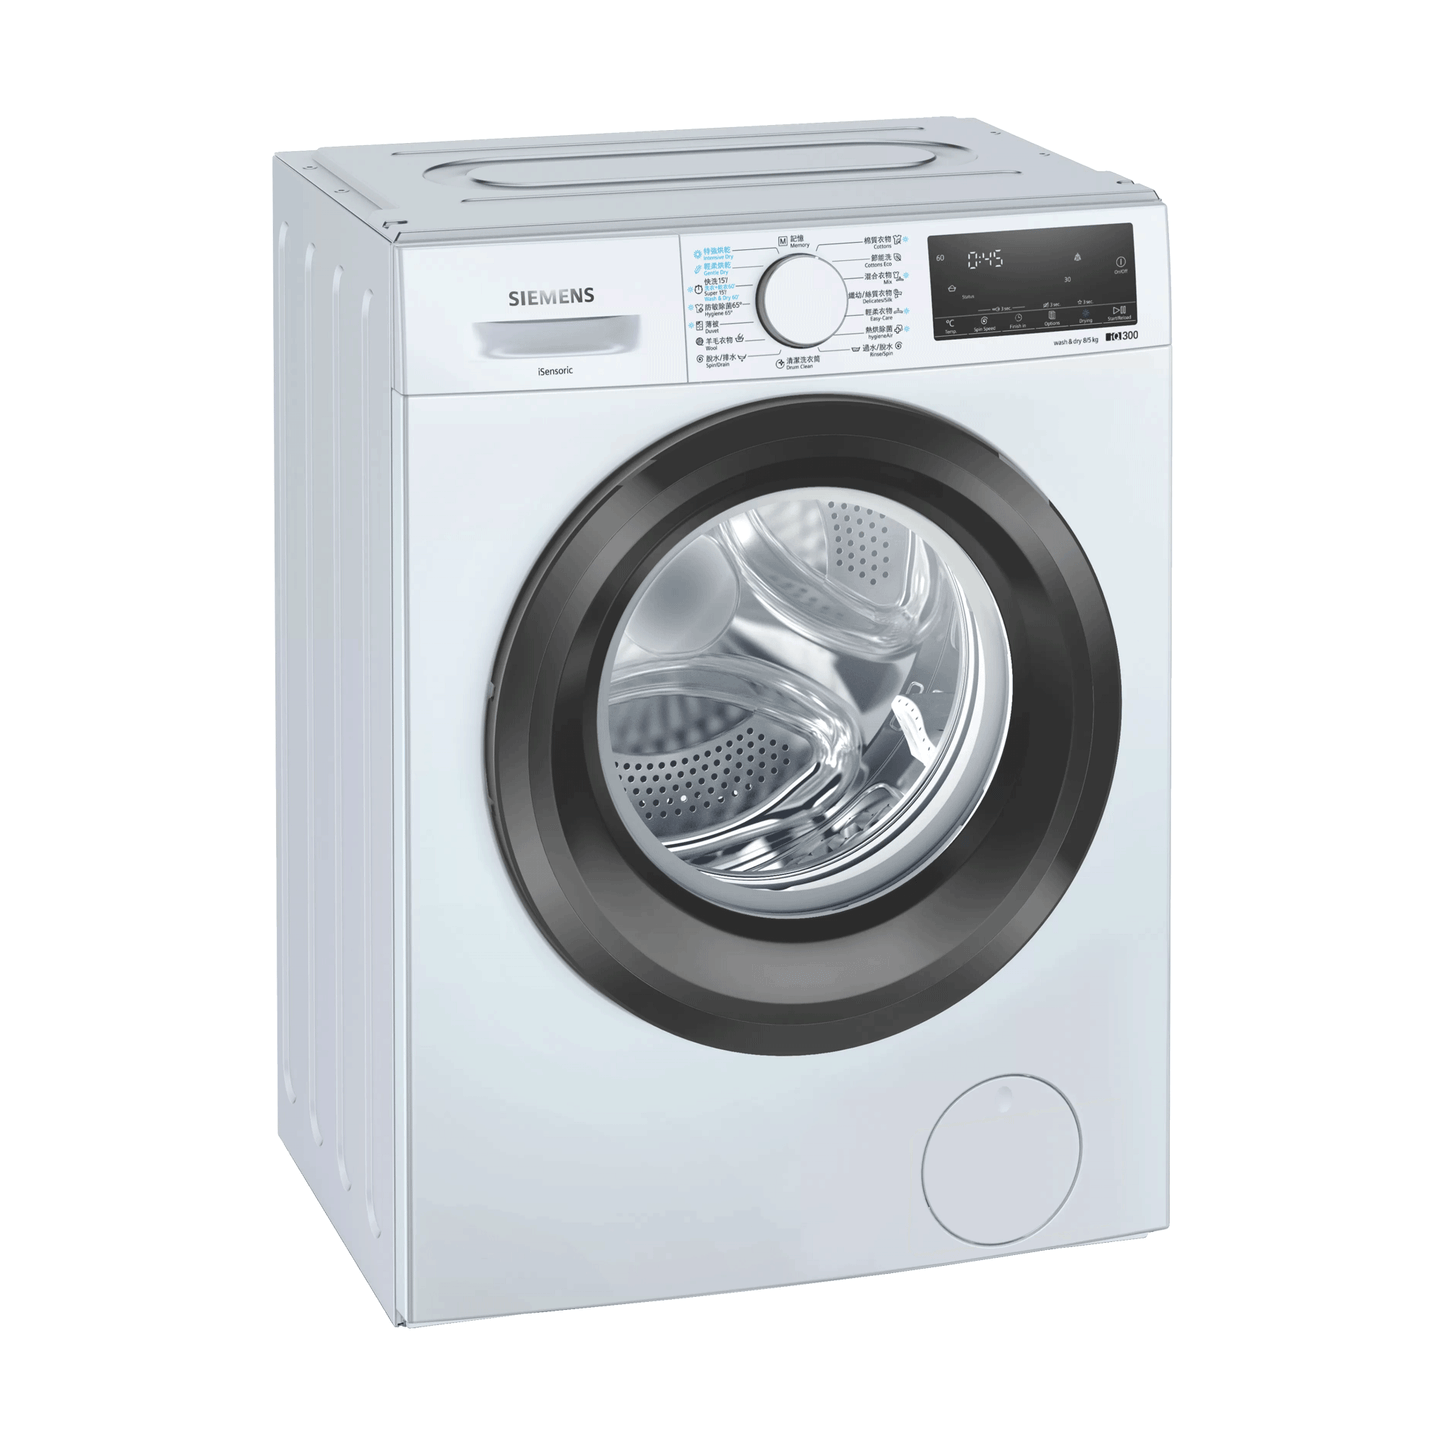 SIEMENS WD14S4B0HK Built-under Washer & Dryer 1400rpm 洗衣乾衣機廚櫃底專用